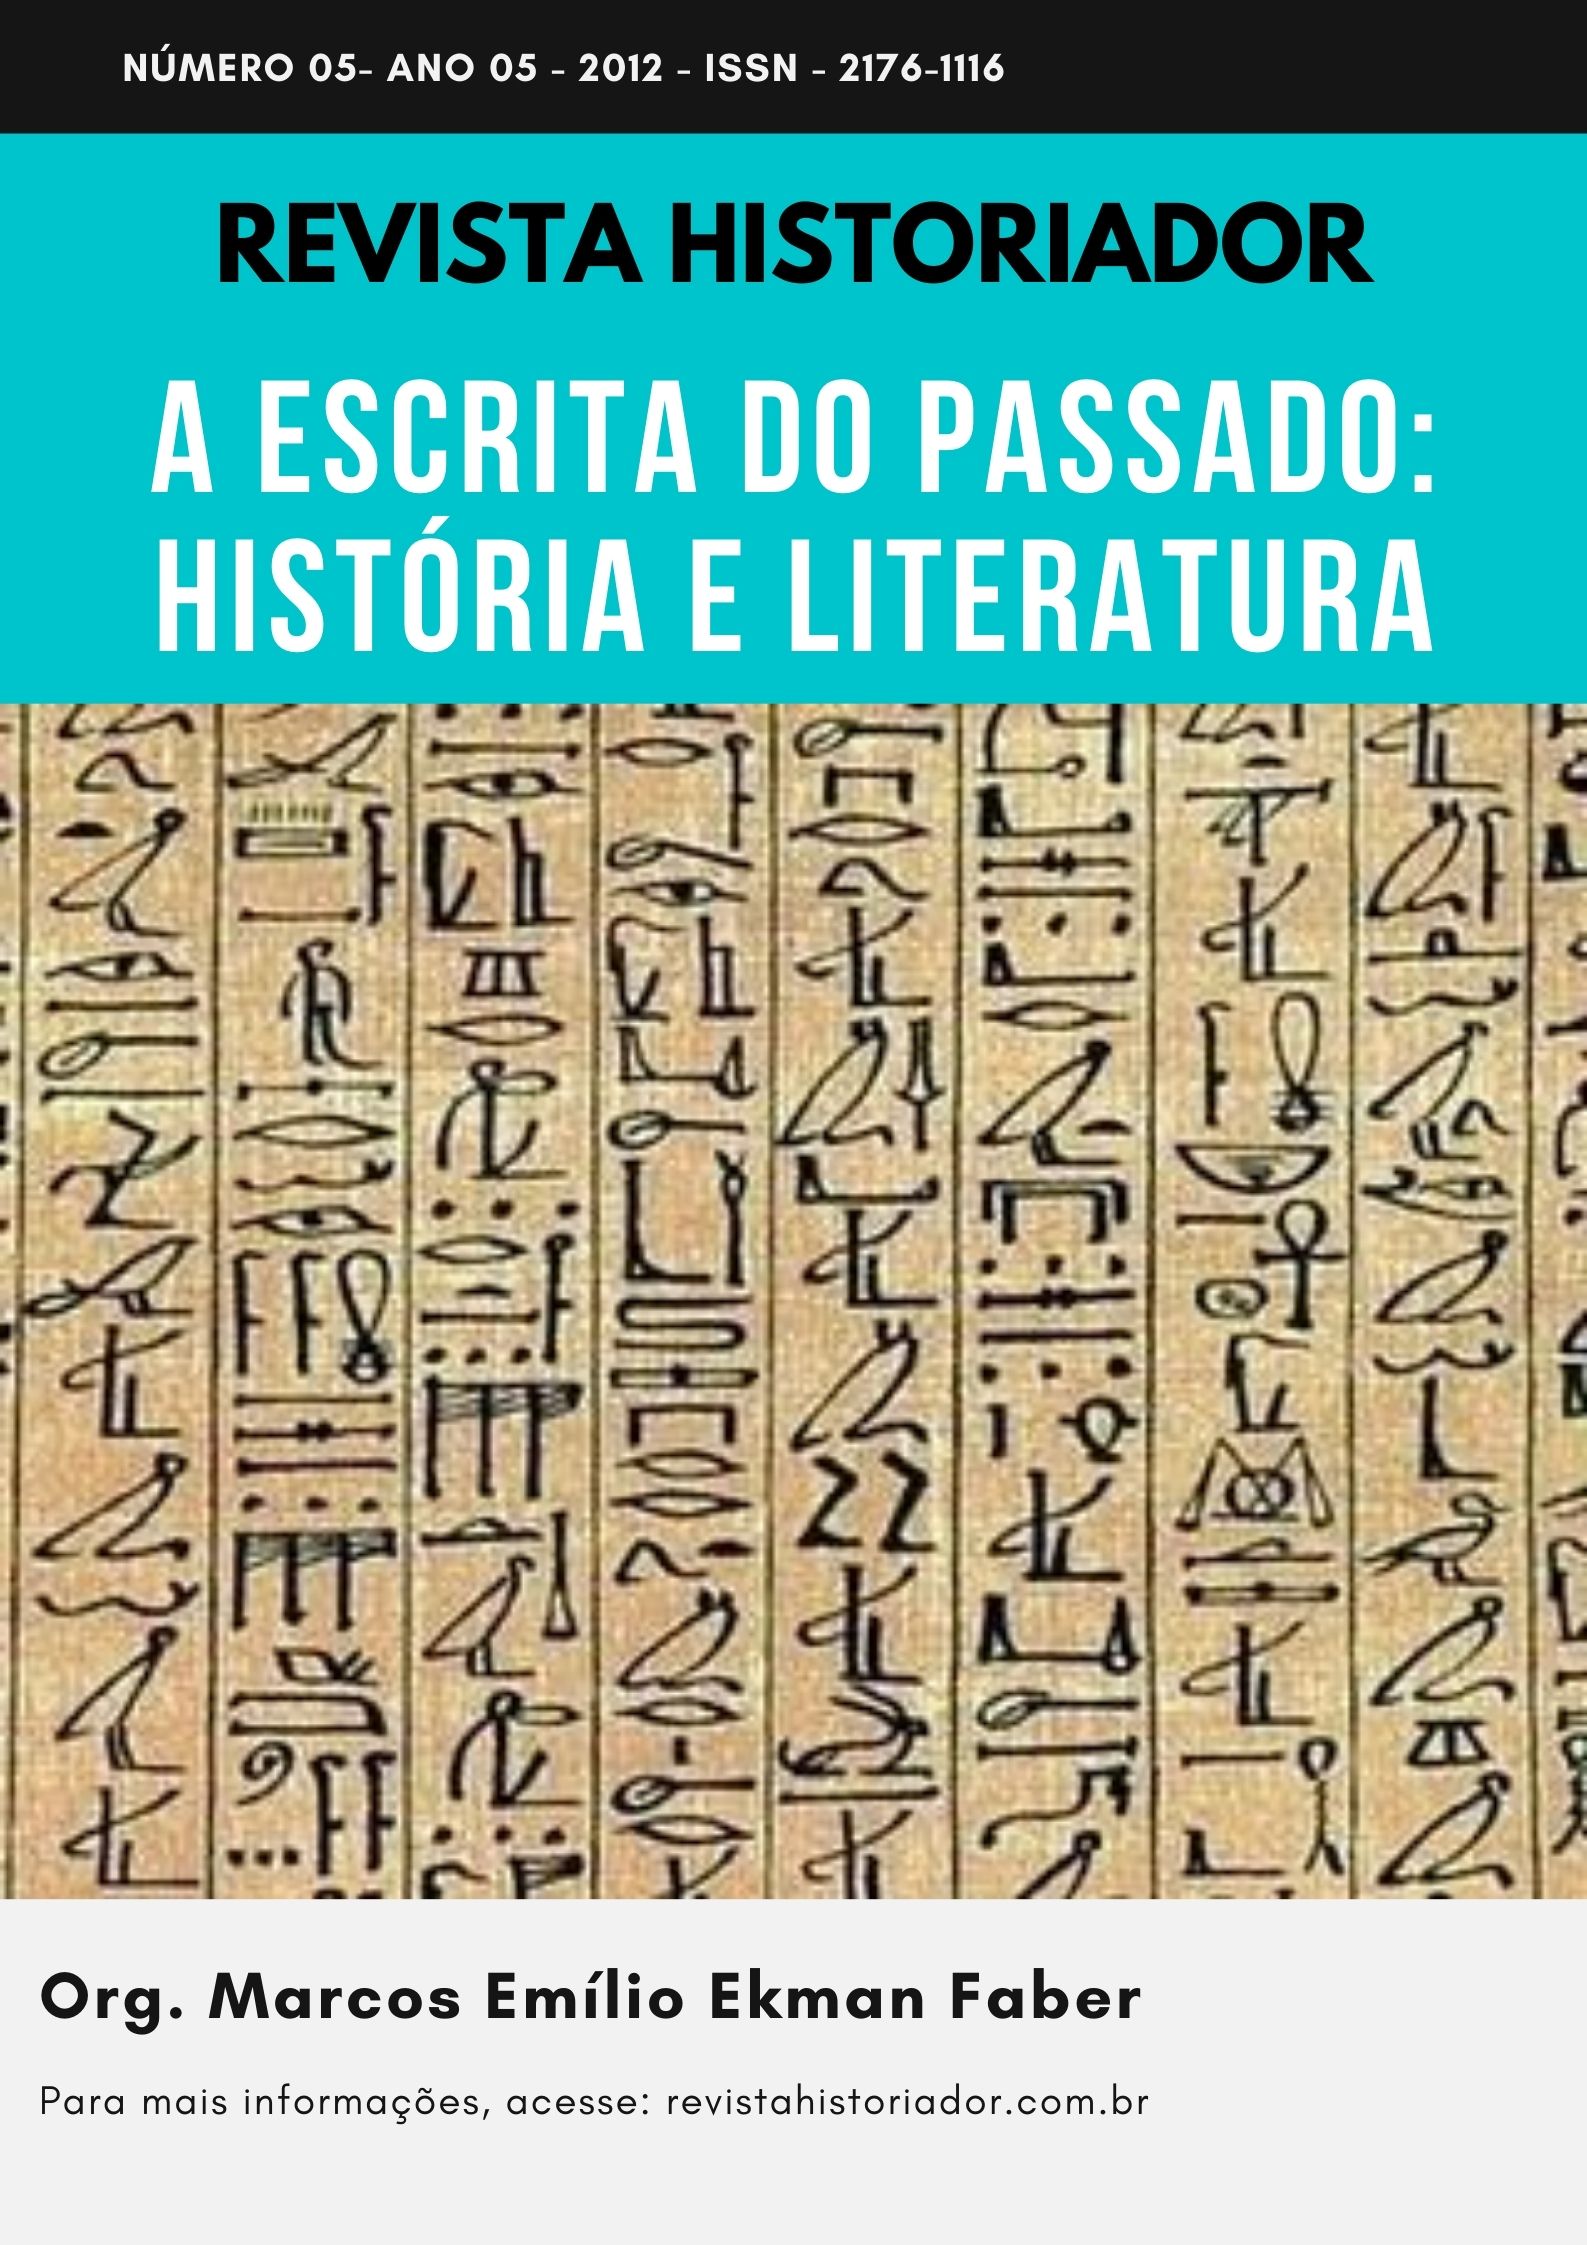 					Ver Núm. 5 (2012): A ESCRITA DO PASSADO: HISTÓRIA E LITERATURA
				